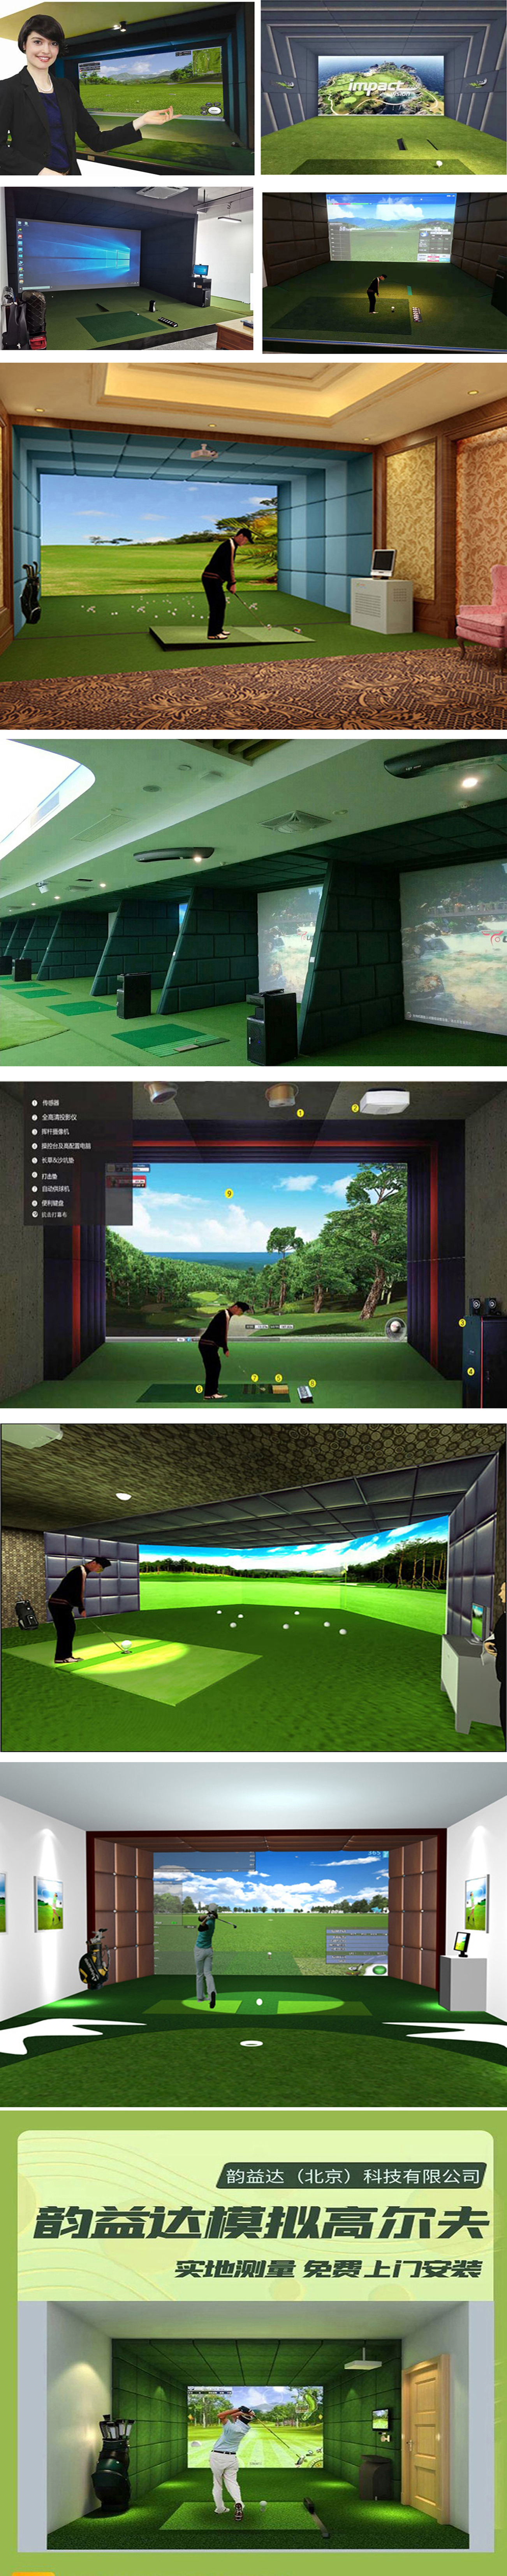 高尔夫模拟器球场实例 01.jpg